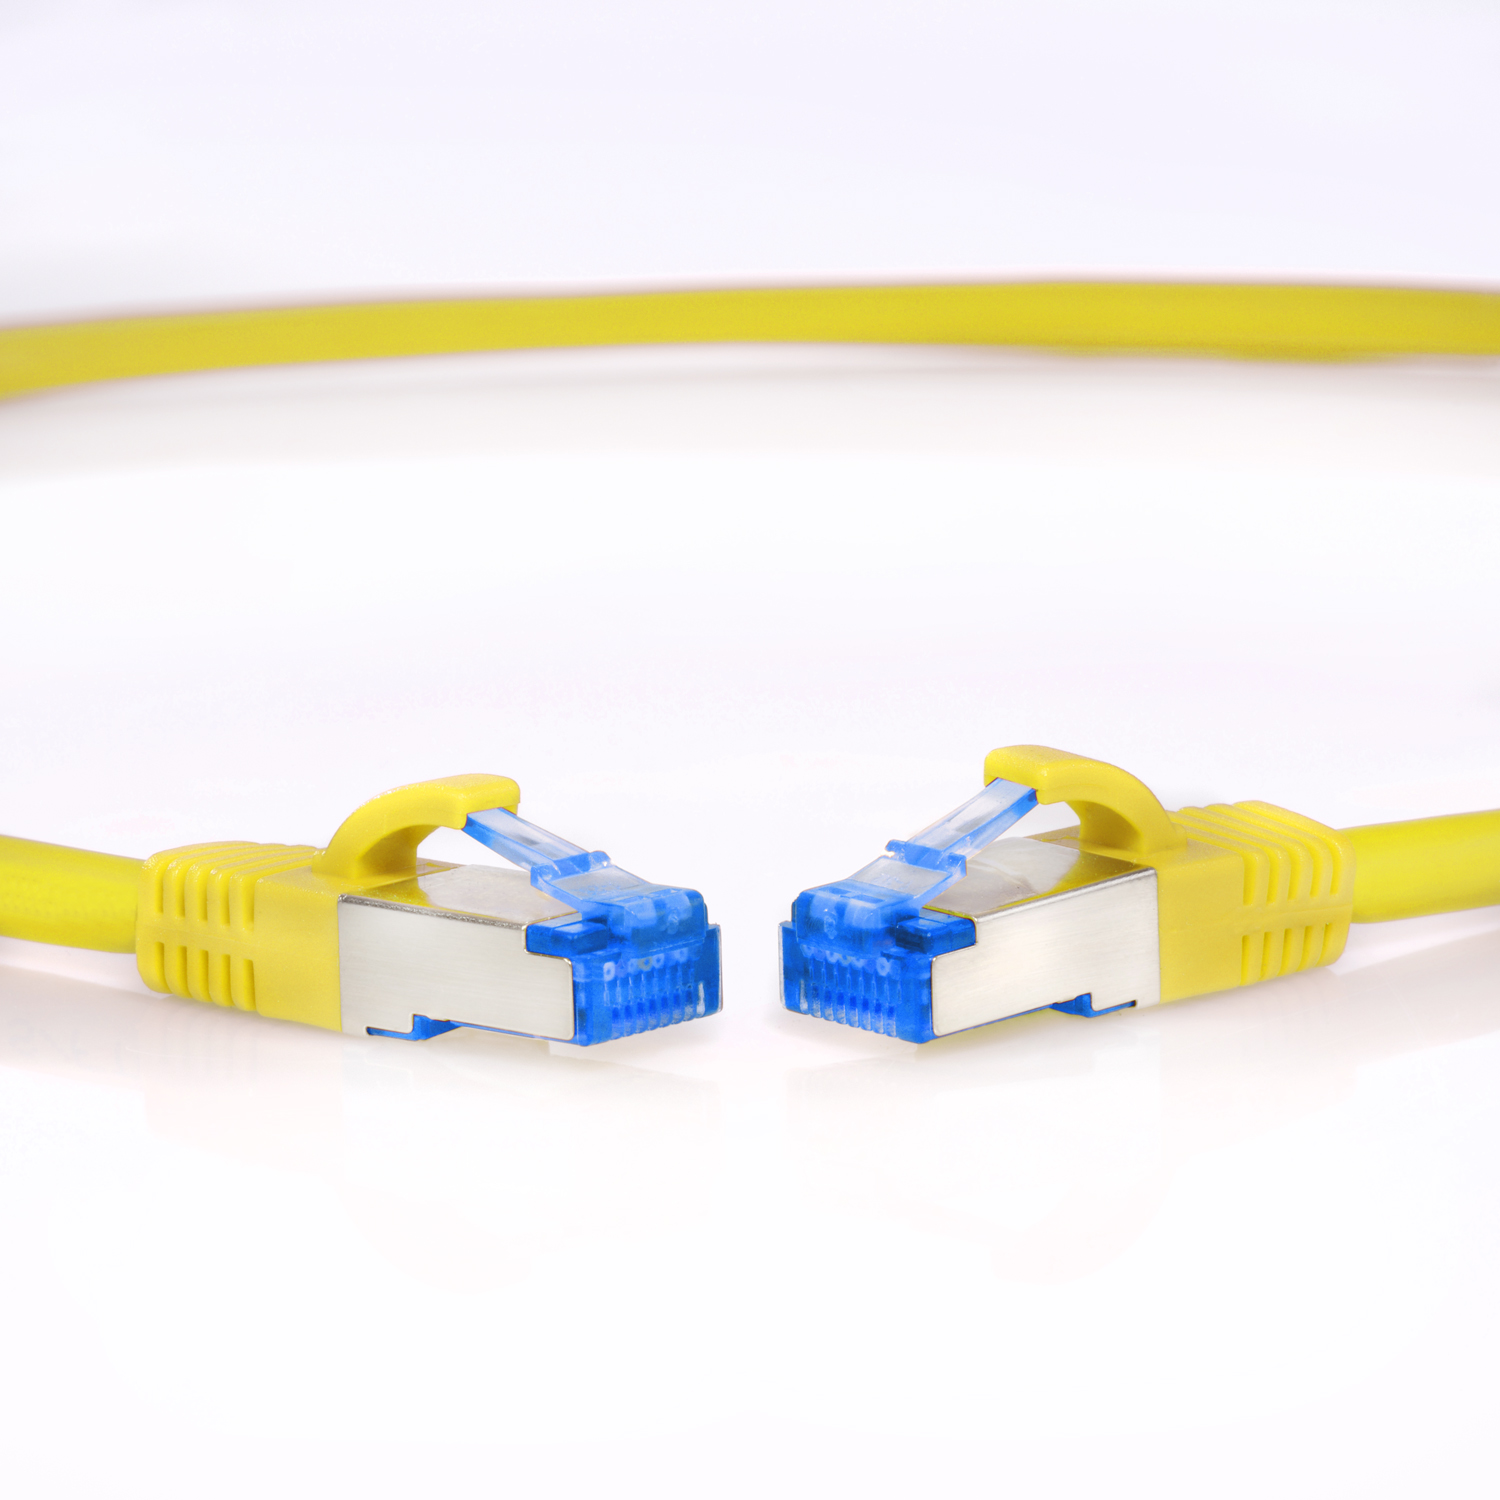 TPFNET 10m Patchkabel / Netzwerkkabel m S/FTP gelb, Netzwerkkabel, 10 10GBit